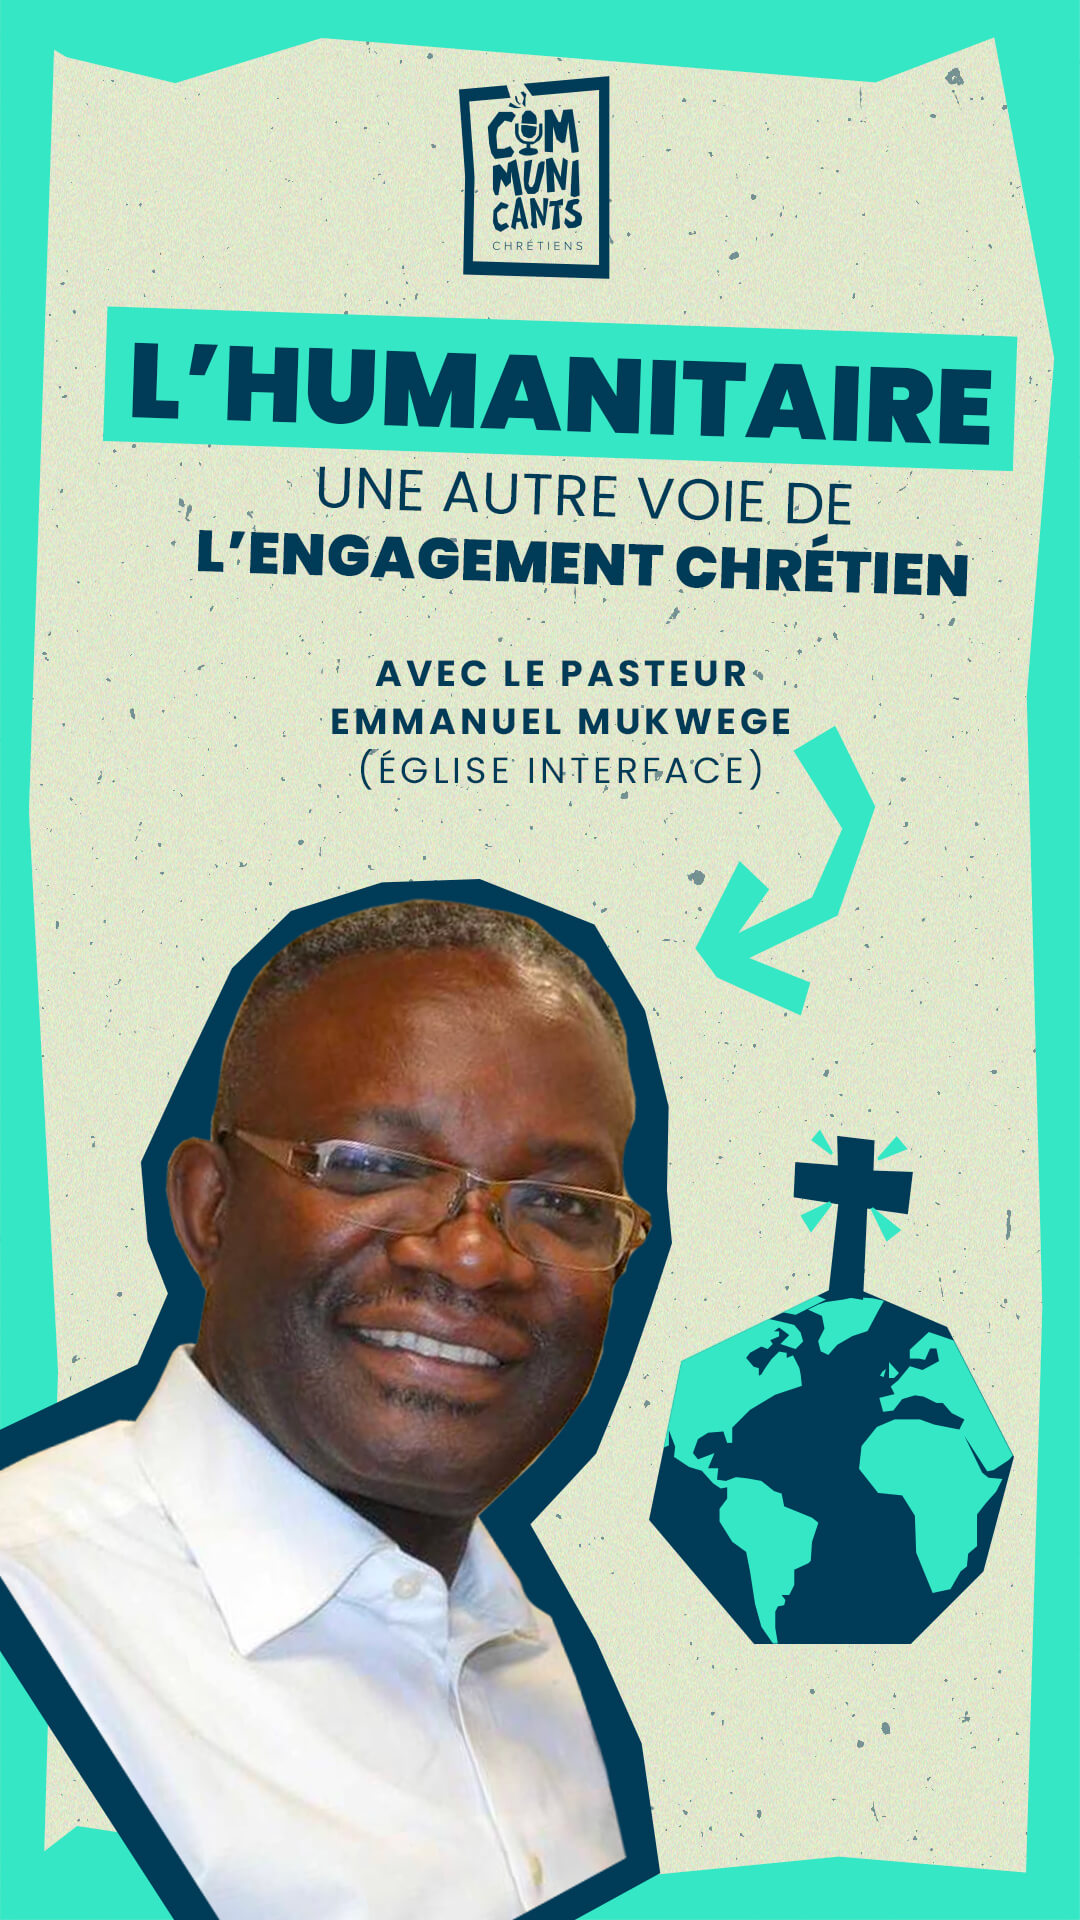 Emmanuel Mukwege humanitaire